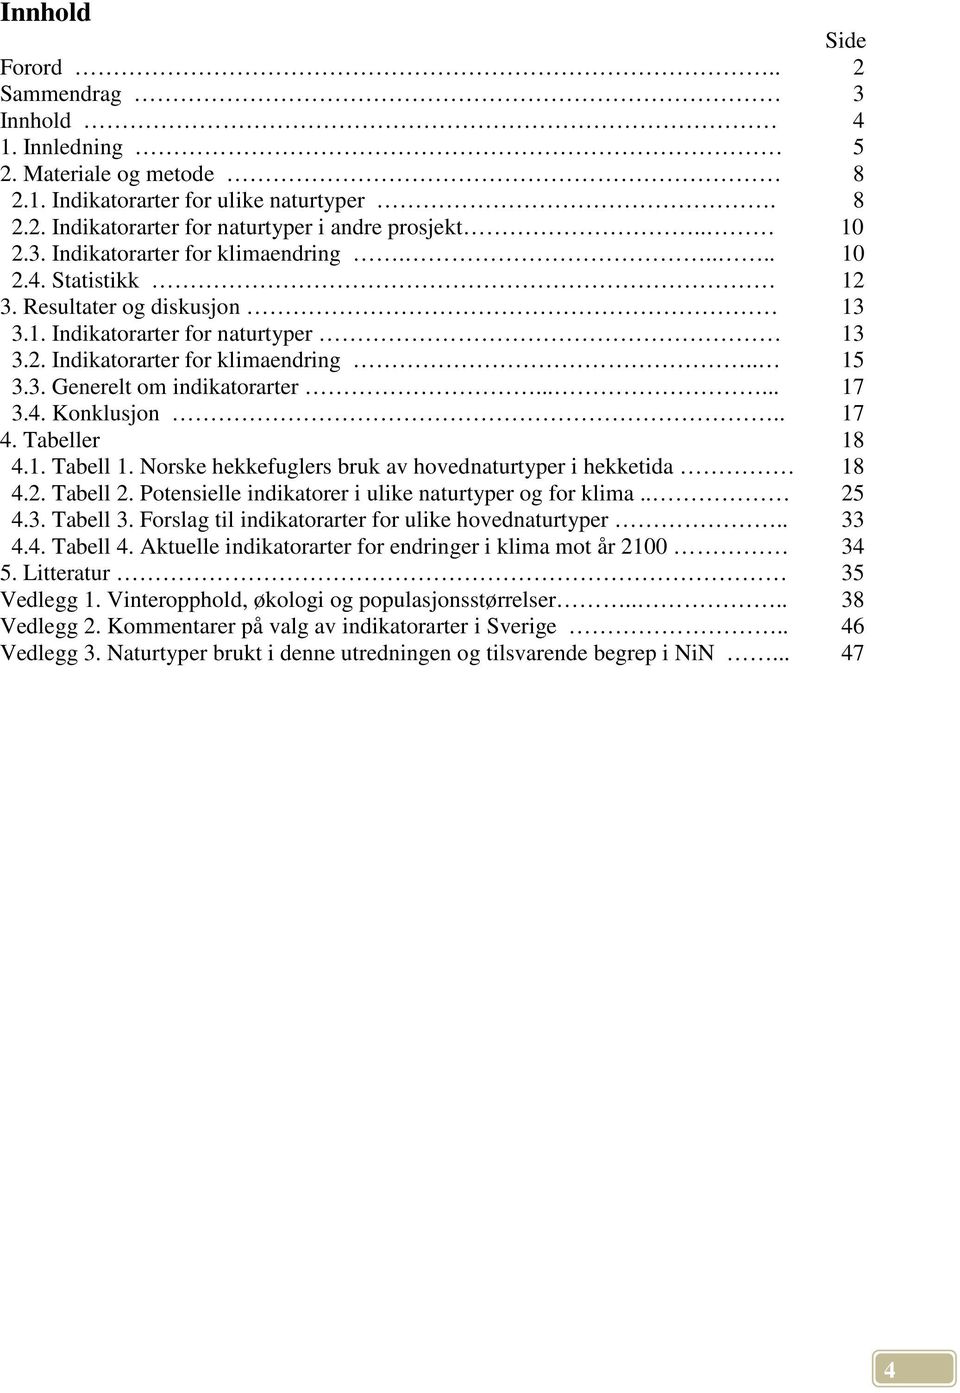 Tabeller 4.1. Tabell 1. Norske hekkefuglers bruk av hovednaturtyper i hekketida 4.2. Tabell 2. Potensielle indikatorer i ulike naturtyper og for klima.. 4.3. Tabell 3.